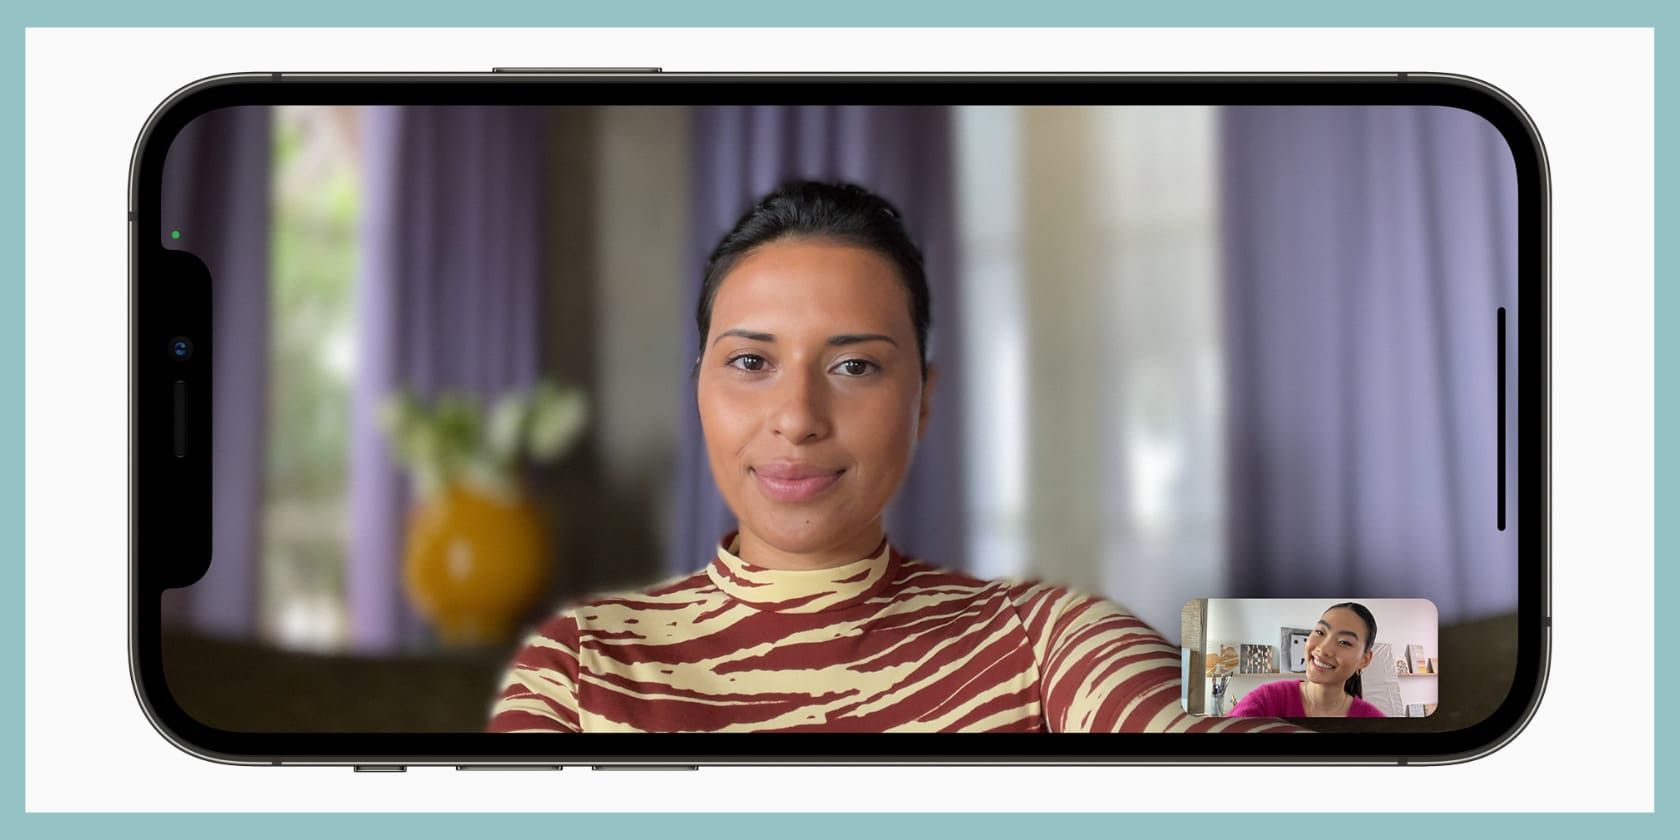 Hãy đăng nhập và trải nghiệm cuộc gọi video tuyệt vời nhất với Video calls! Bạn sẽ không chỉ thấy được khuôn mặt đối tác mà còn có thể nghe được giọng nói chân thật. Đây sẽ là trải nghiệm tuyệt vời cho những người thích giao tiếp mặt đối mặt.